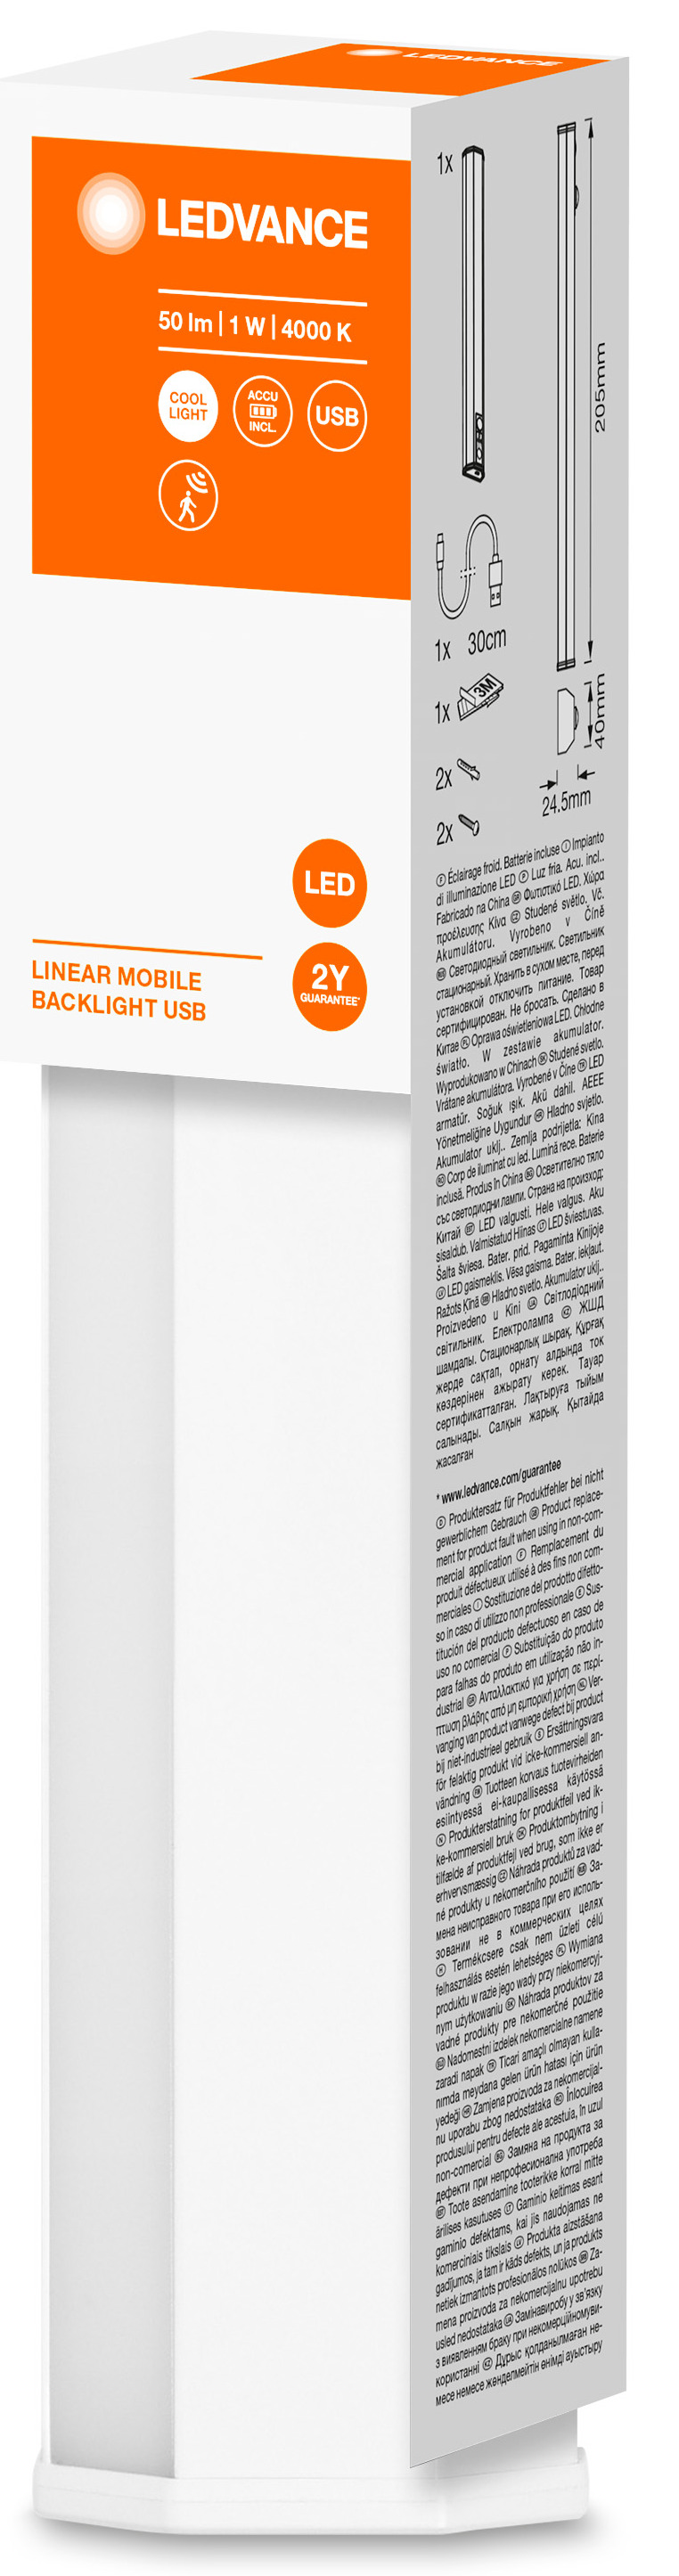 Светильник Ledvance Mobile Bl 200мм Sen Usb Wt (4058075610484) инструкция - изображение 6